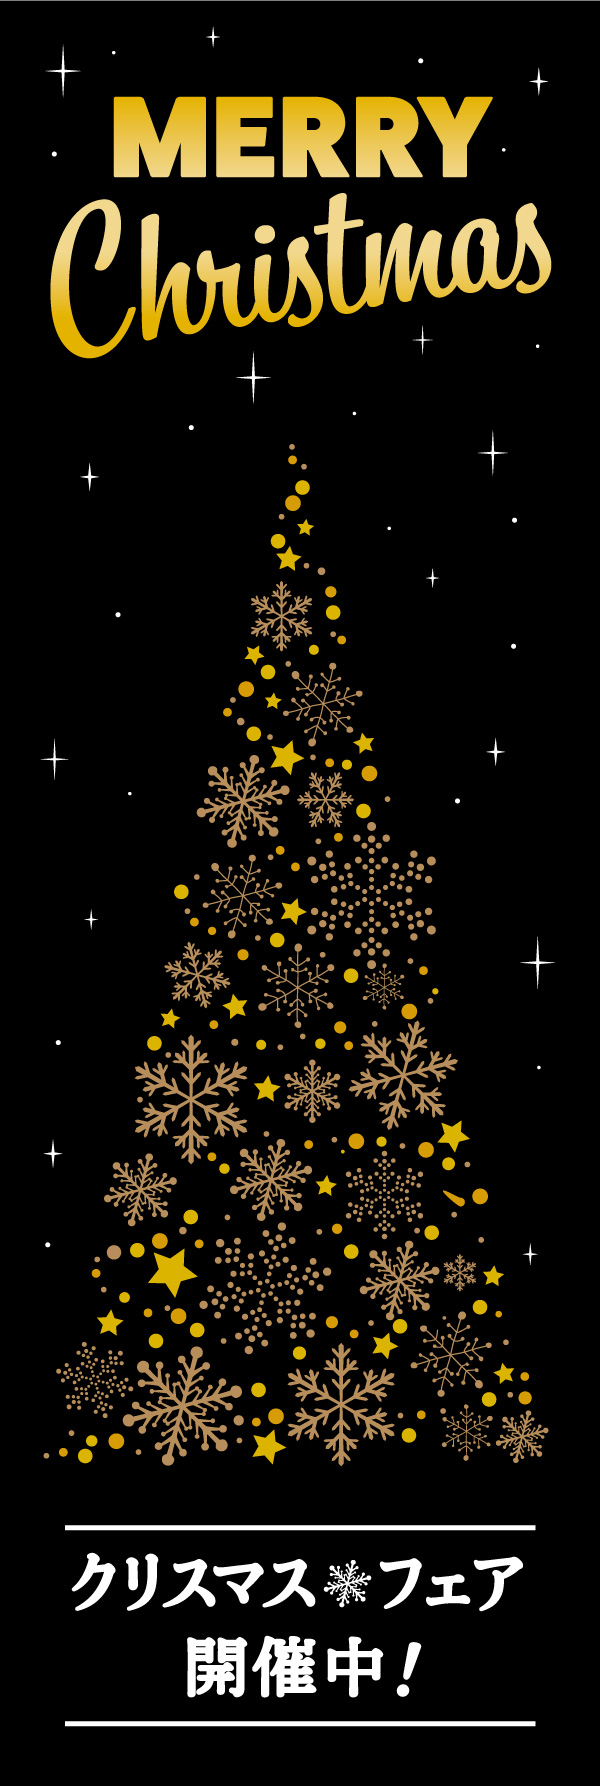 クリスマスフェア 14「クリスマスフェア」の幟です。黒背景に金の飾りで、高級感のあるクリスマス幟に仕上げました。(Y.M) 